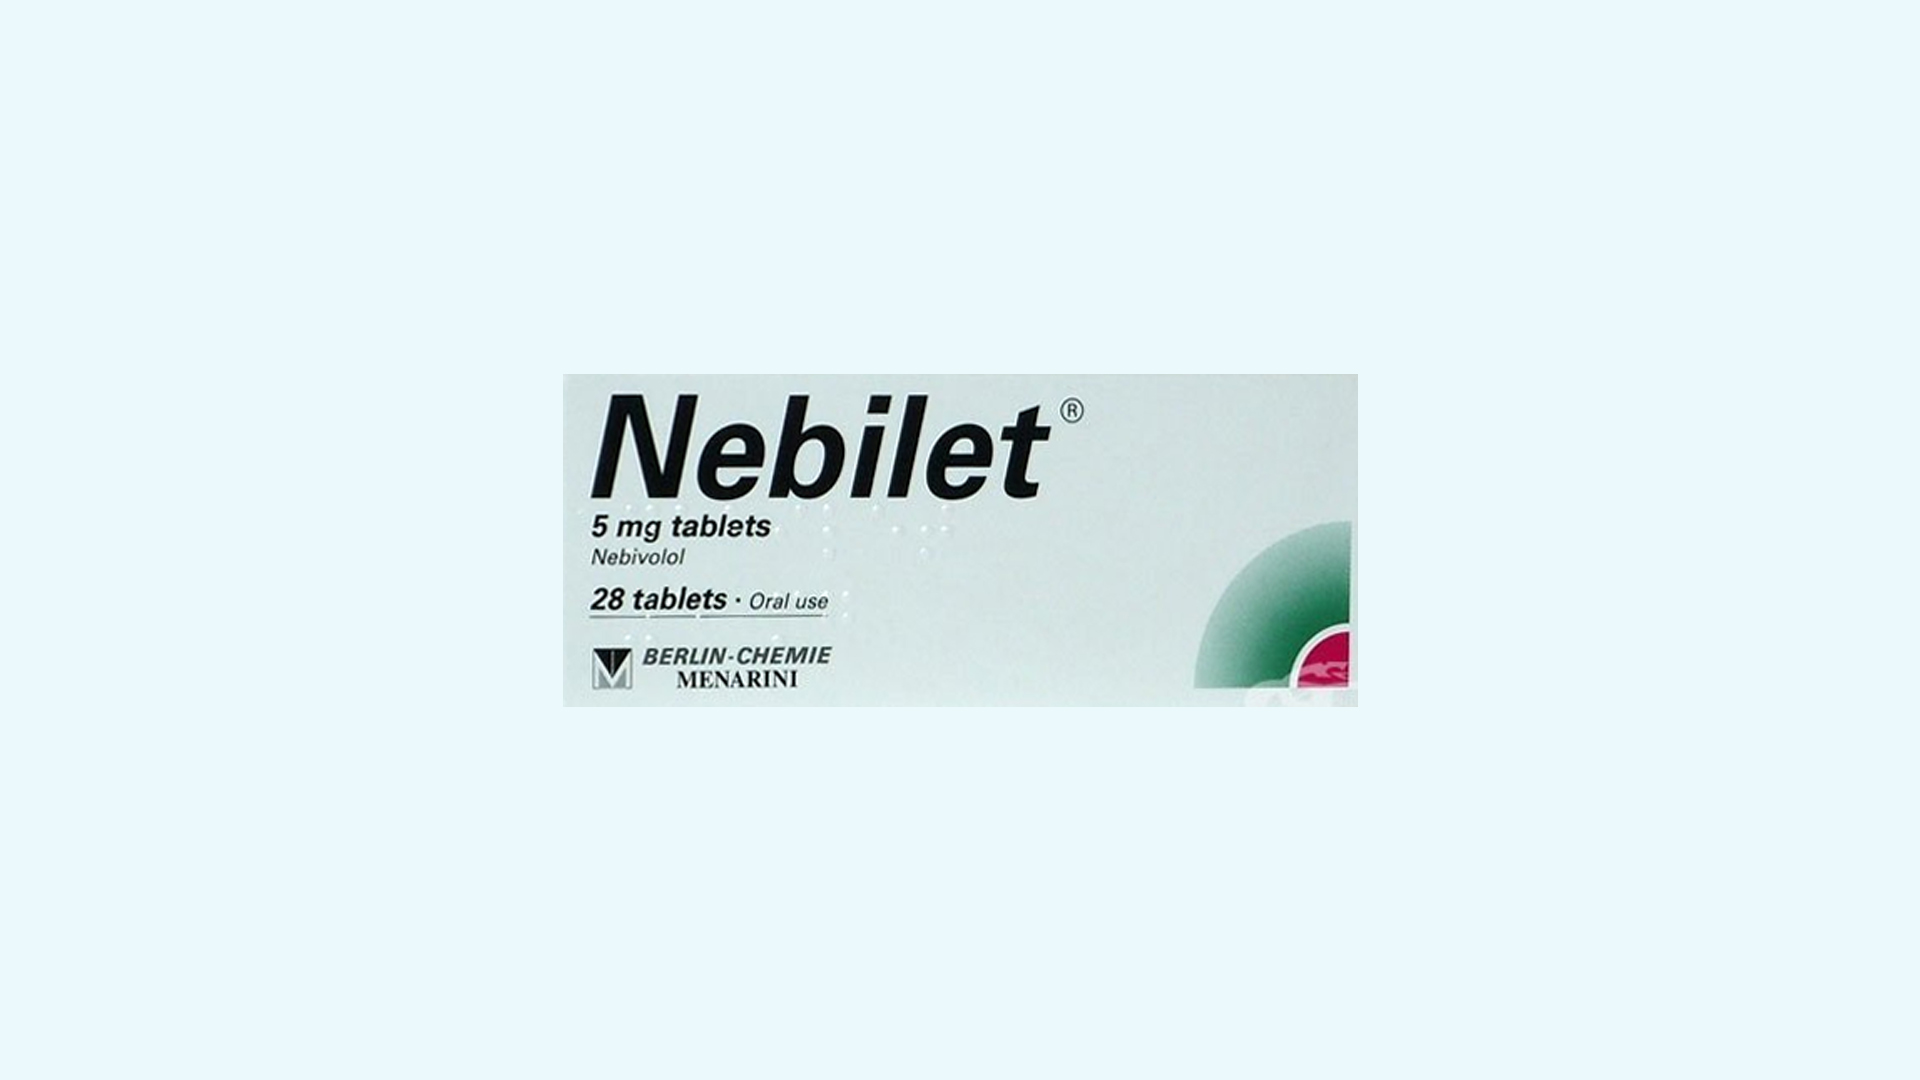 Nebilet – informacje o leku  dawkowanie oraz przeciwwskazania